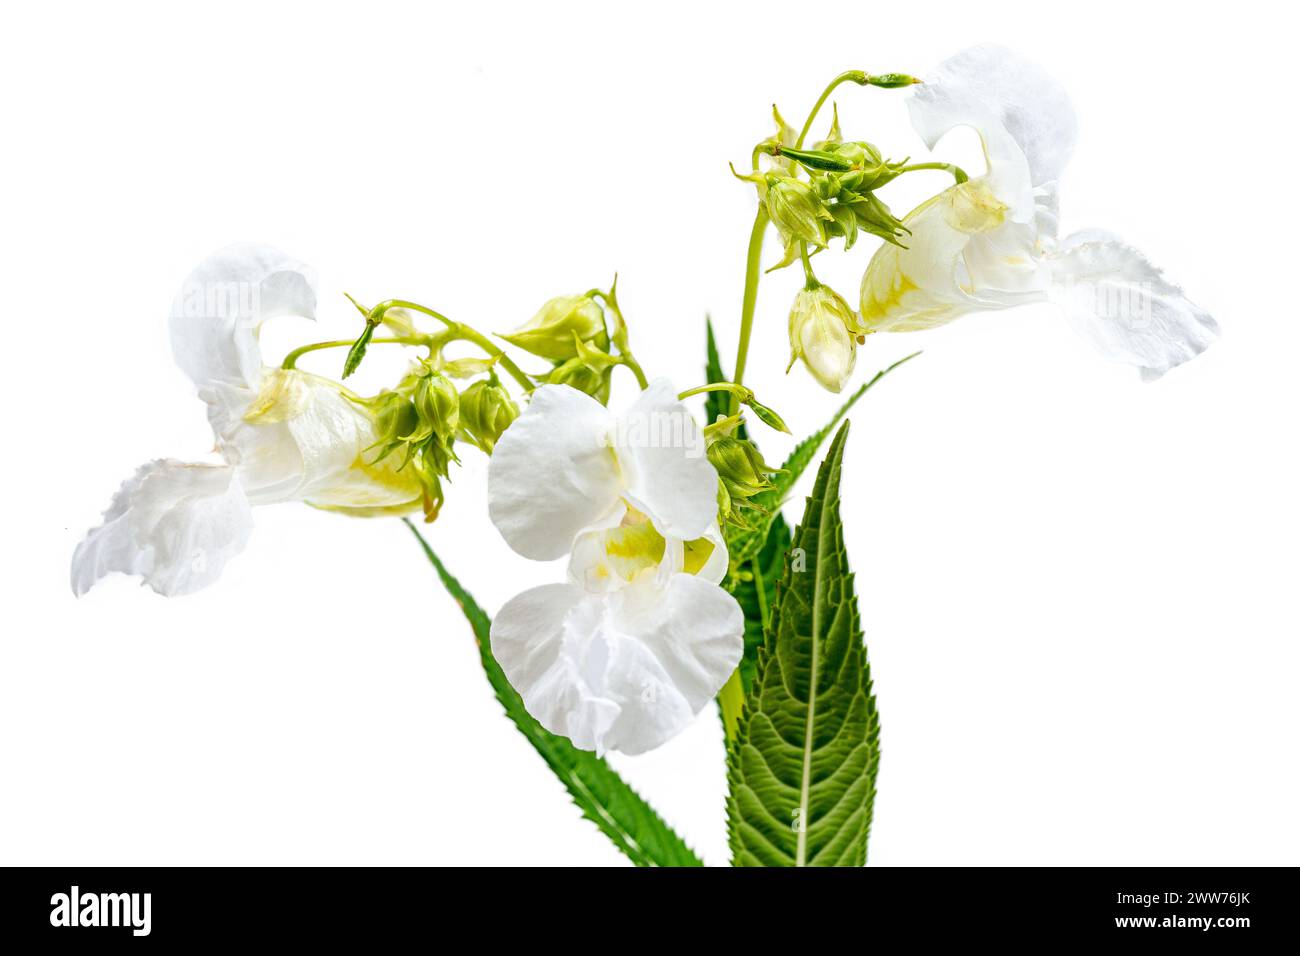 Il balsamo dell'Himalaya, impatiens glandulifera, è una specie di pianta in fiore della famiglia delle Balsaminaceae. Foto Stock